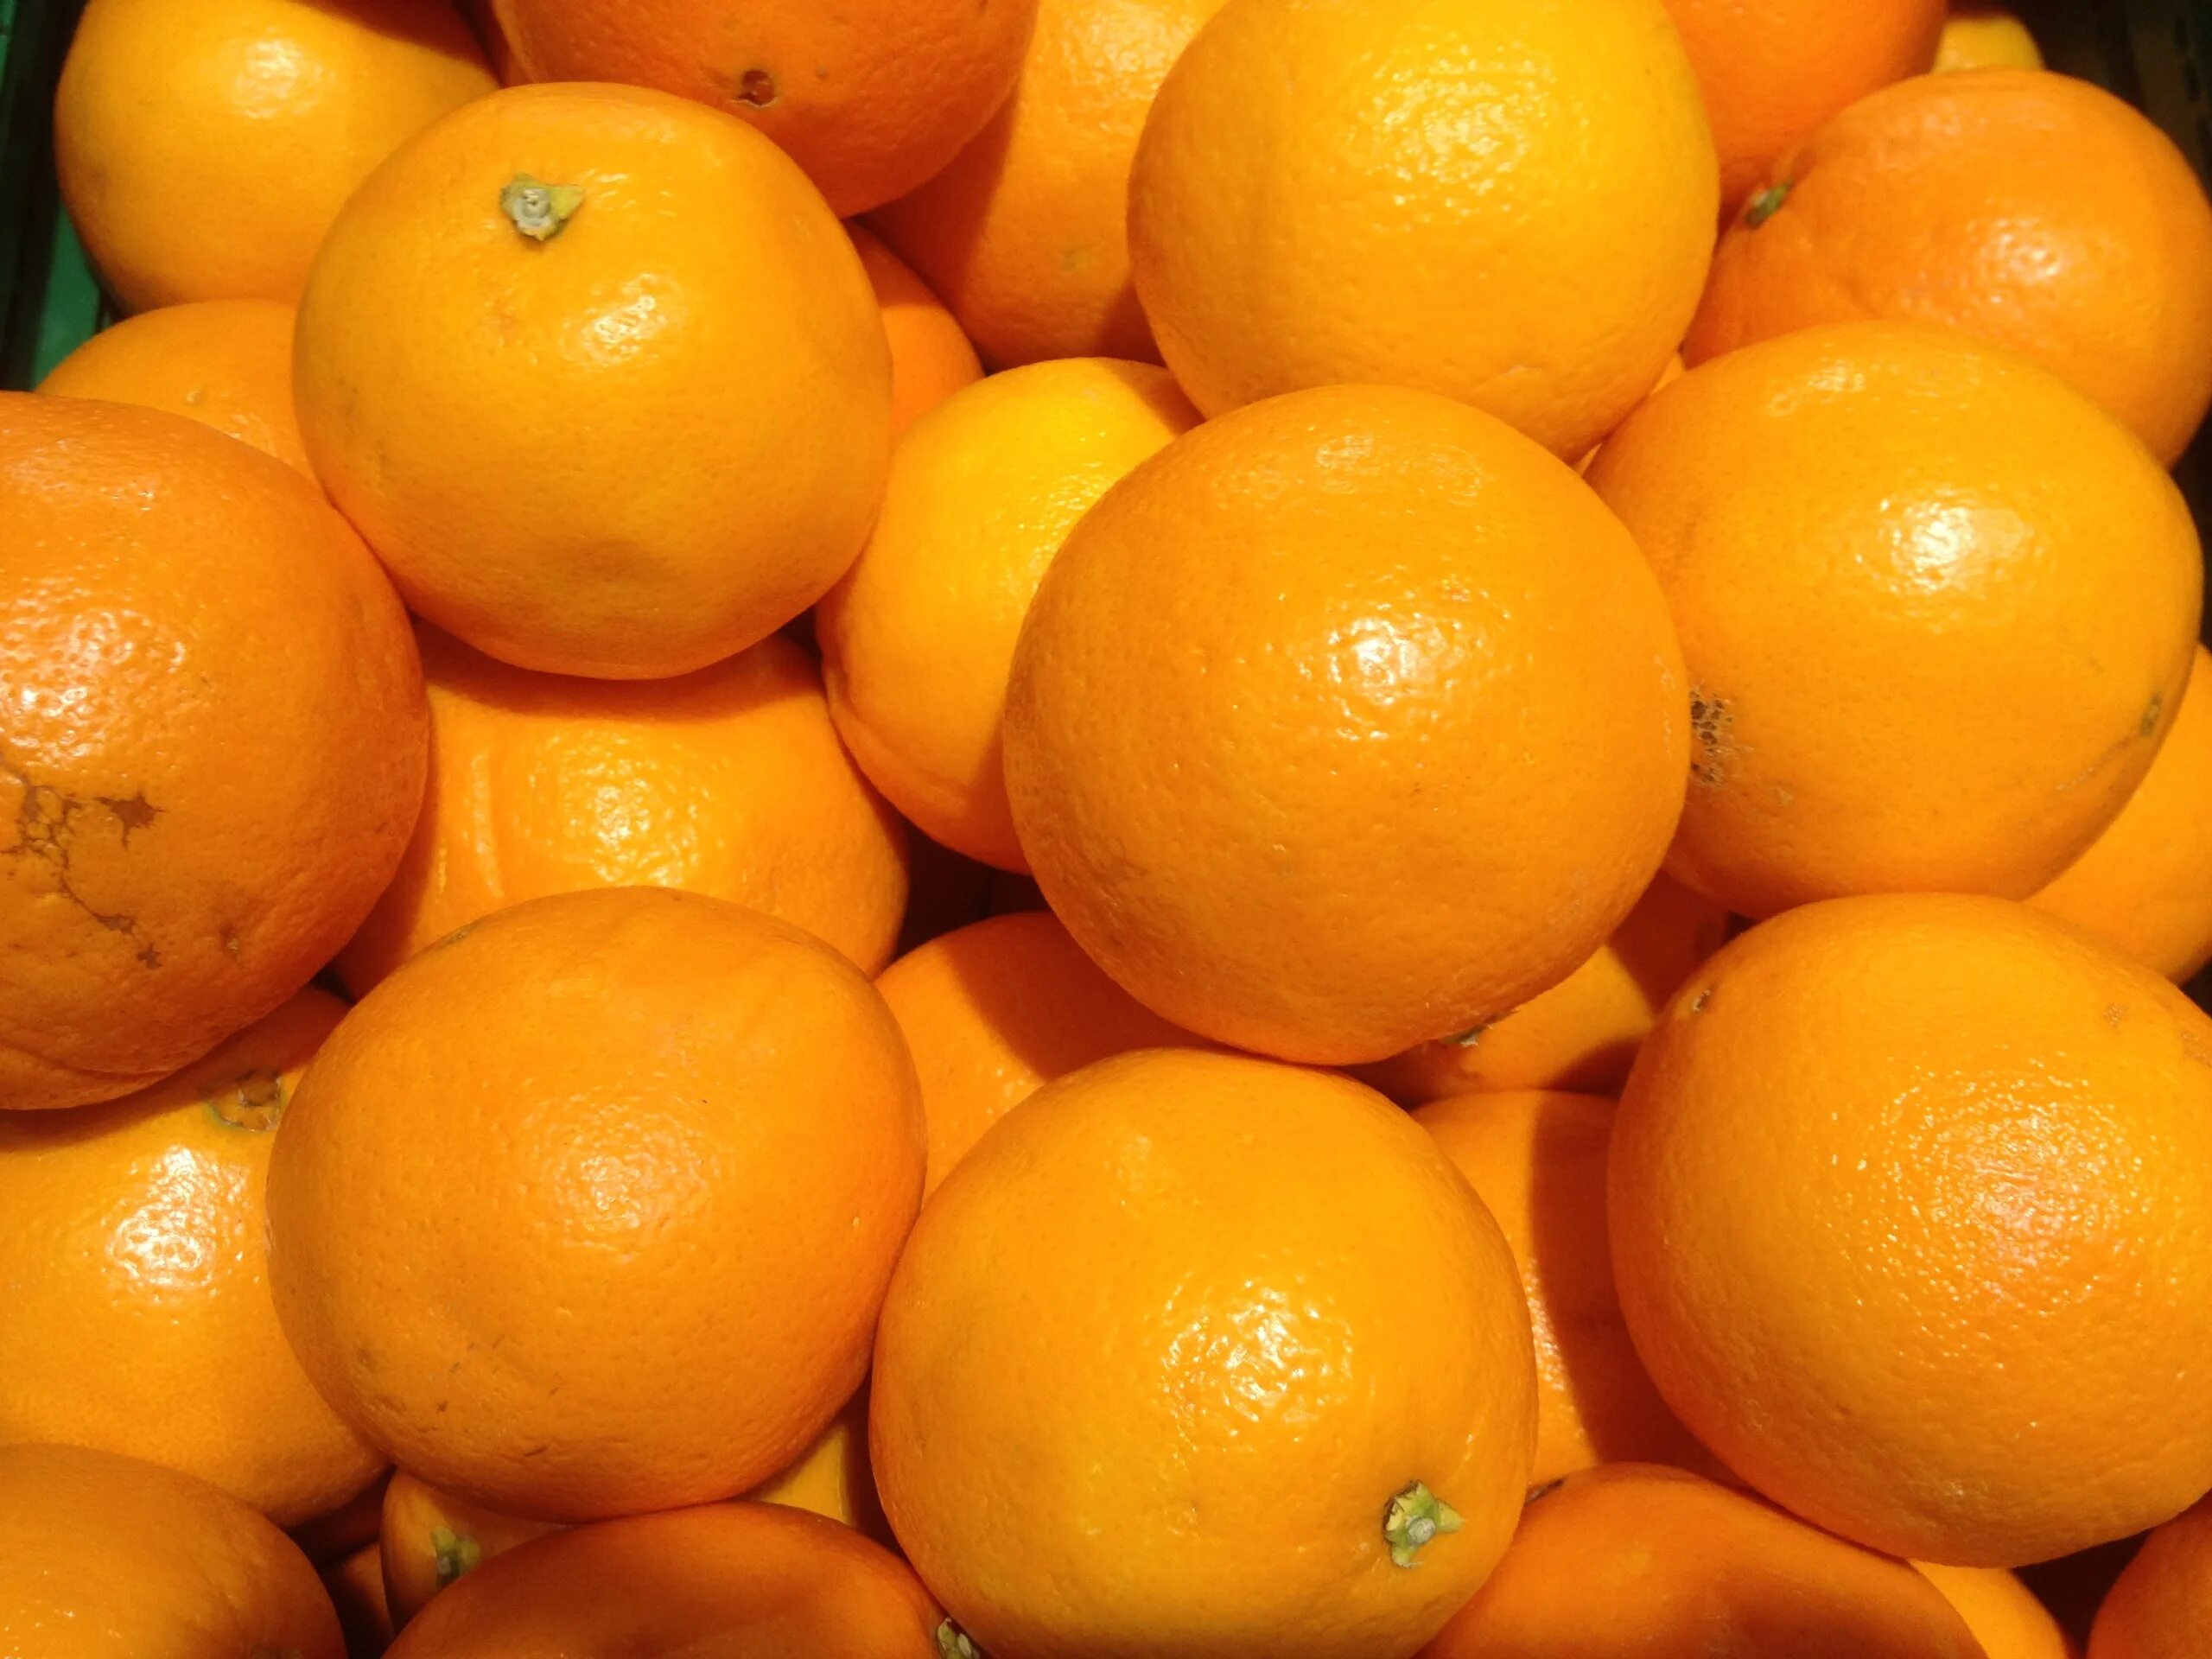 They like oranges. Королевский мандарин. Померанец оранж. Апельсин. Апельсин фрукт.